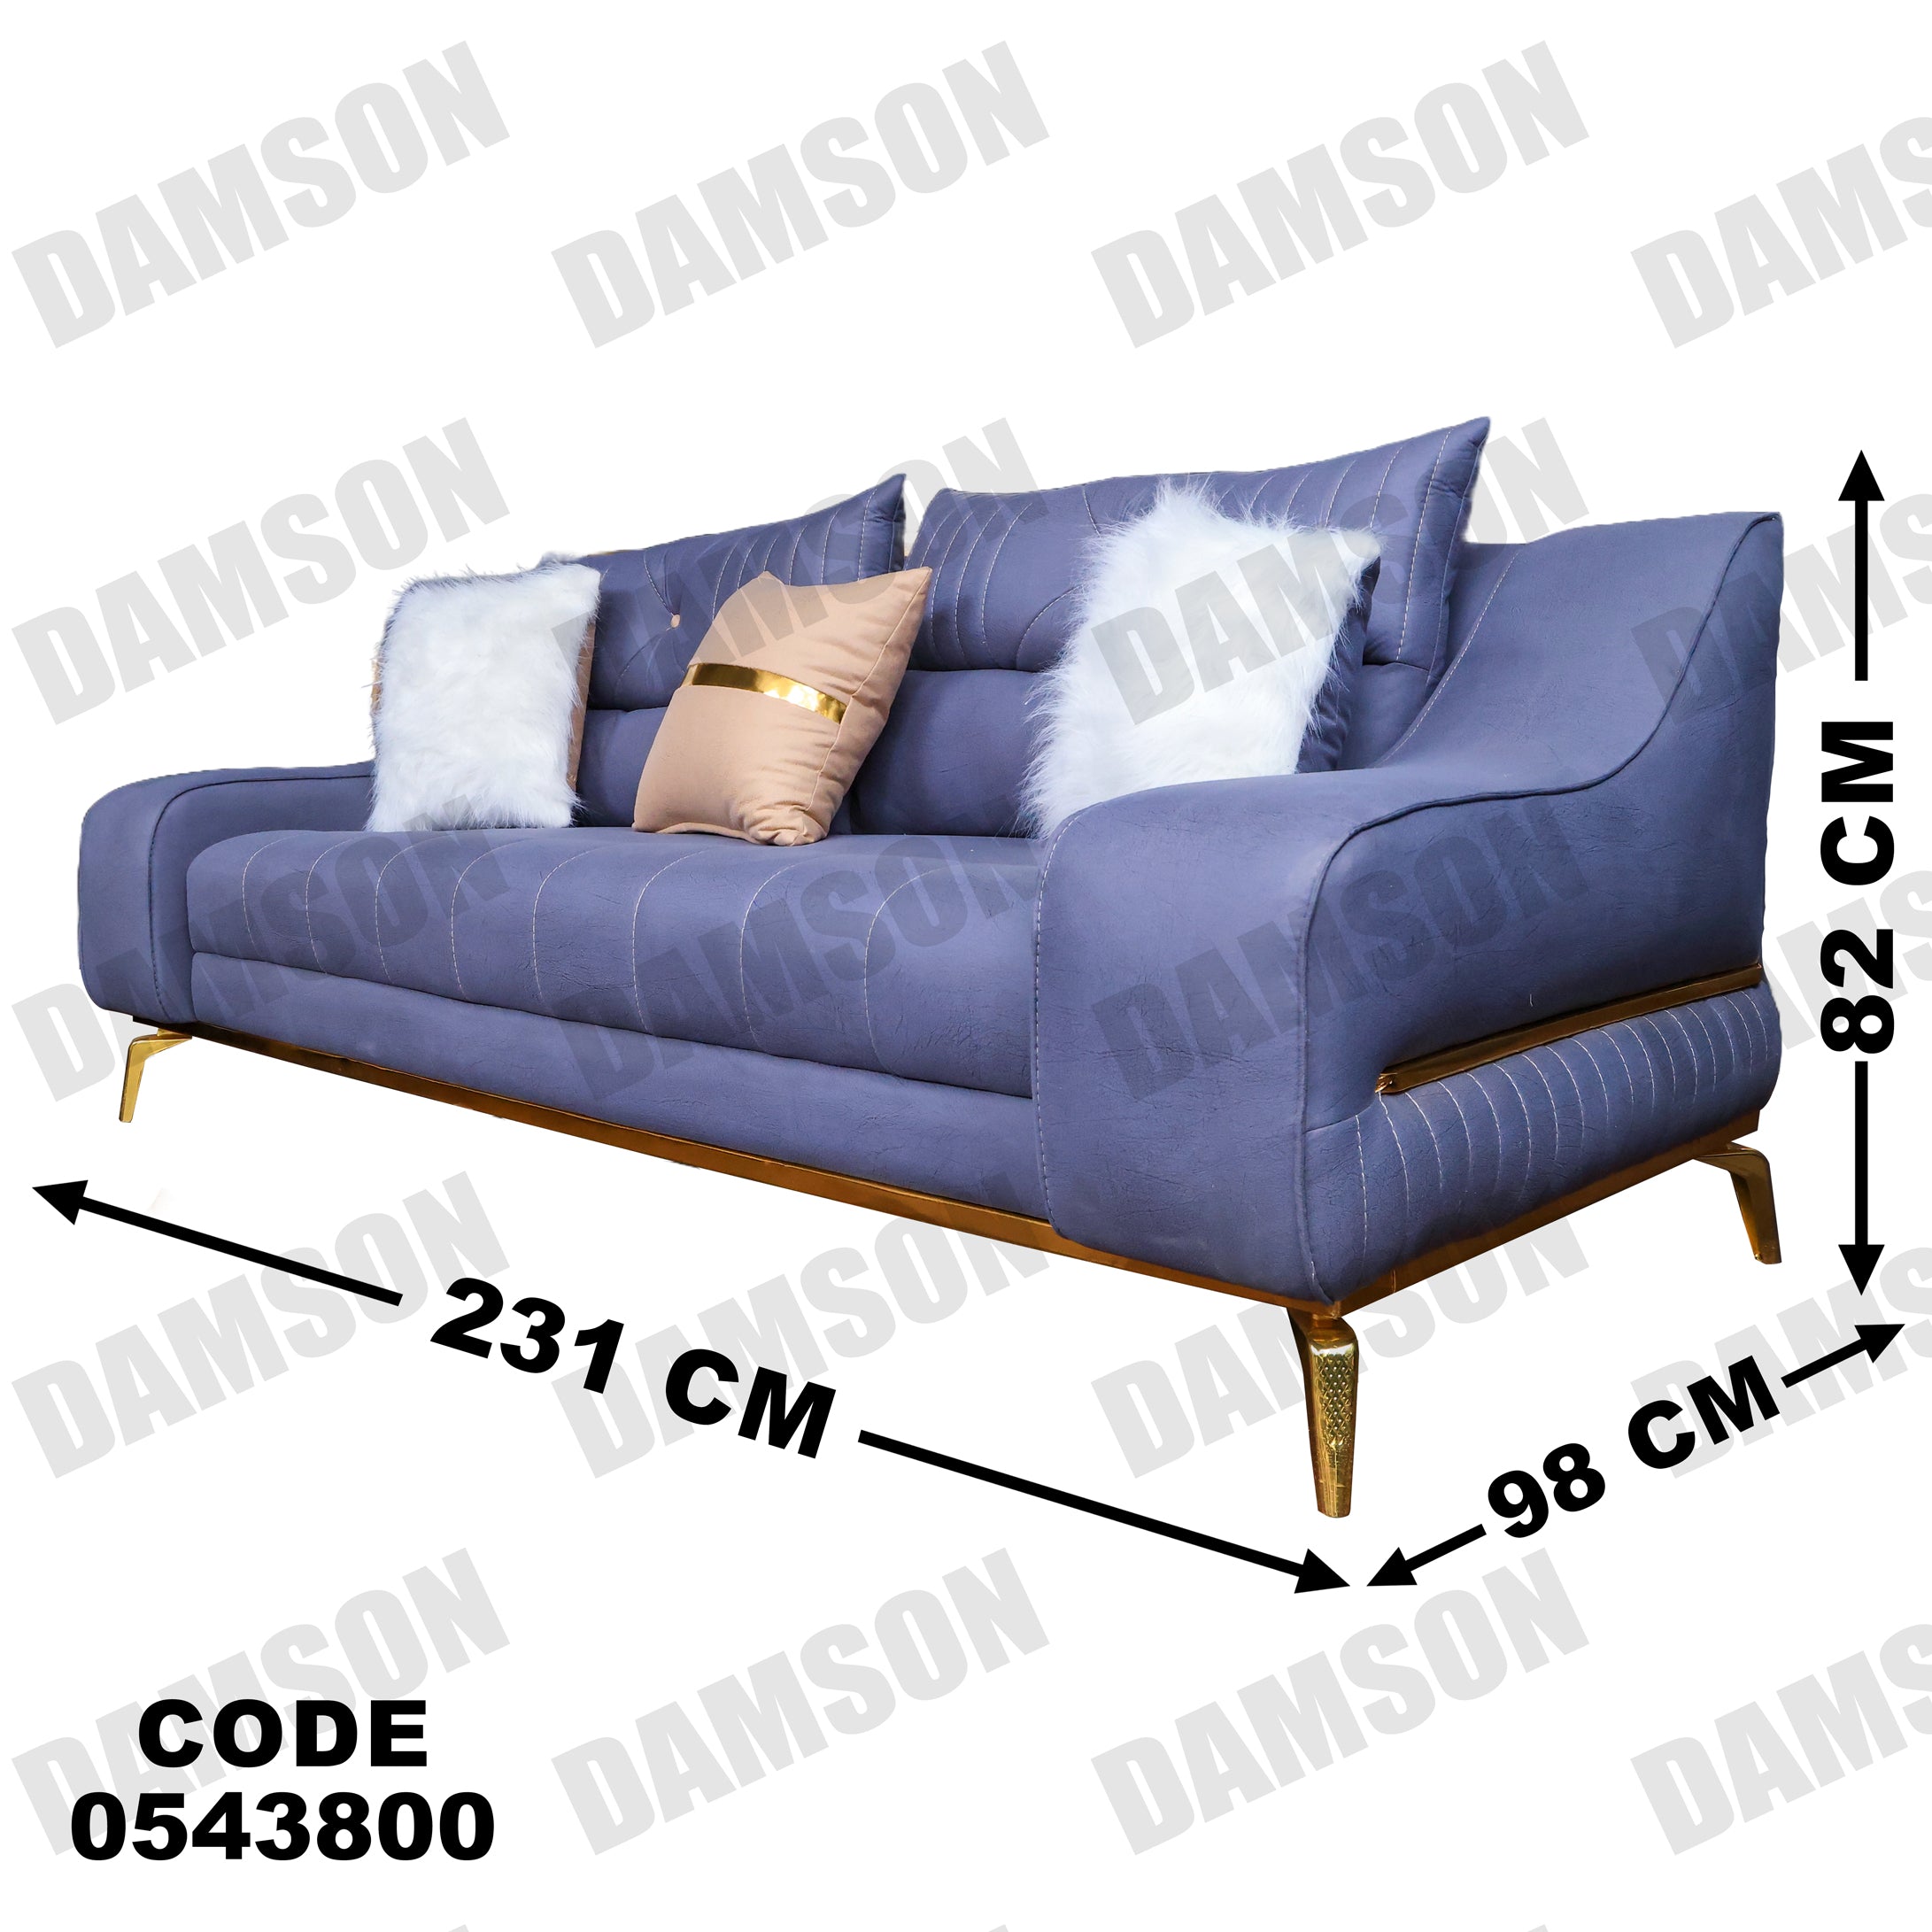 انترية 438 - Damson Furnitureانترية 438